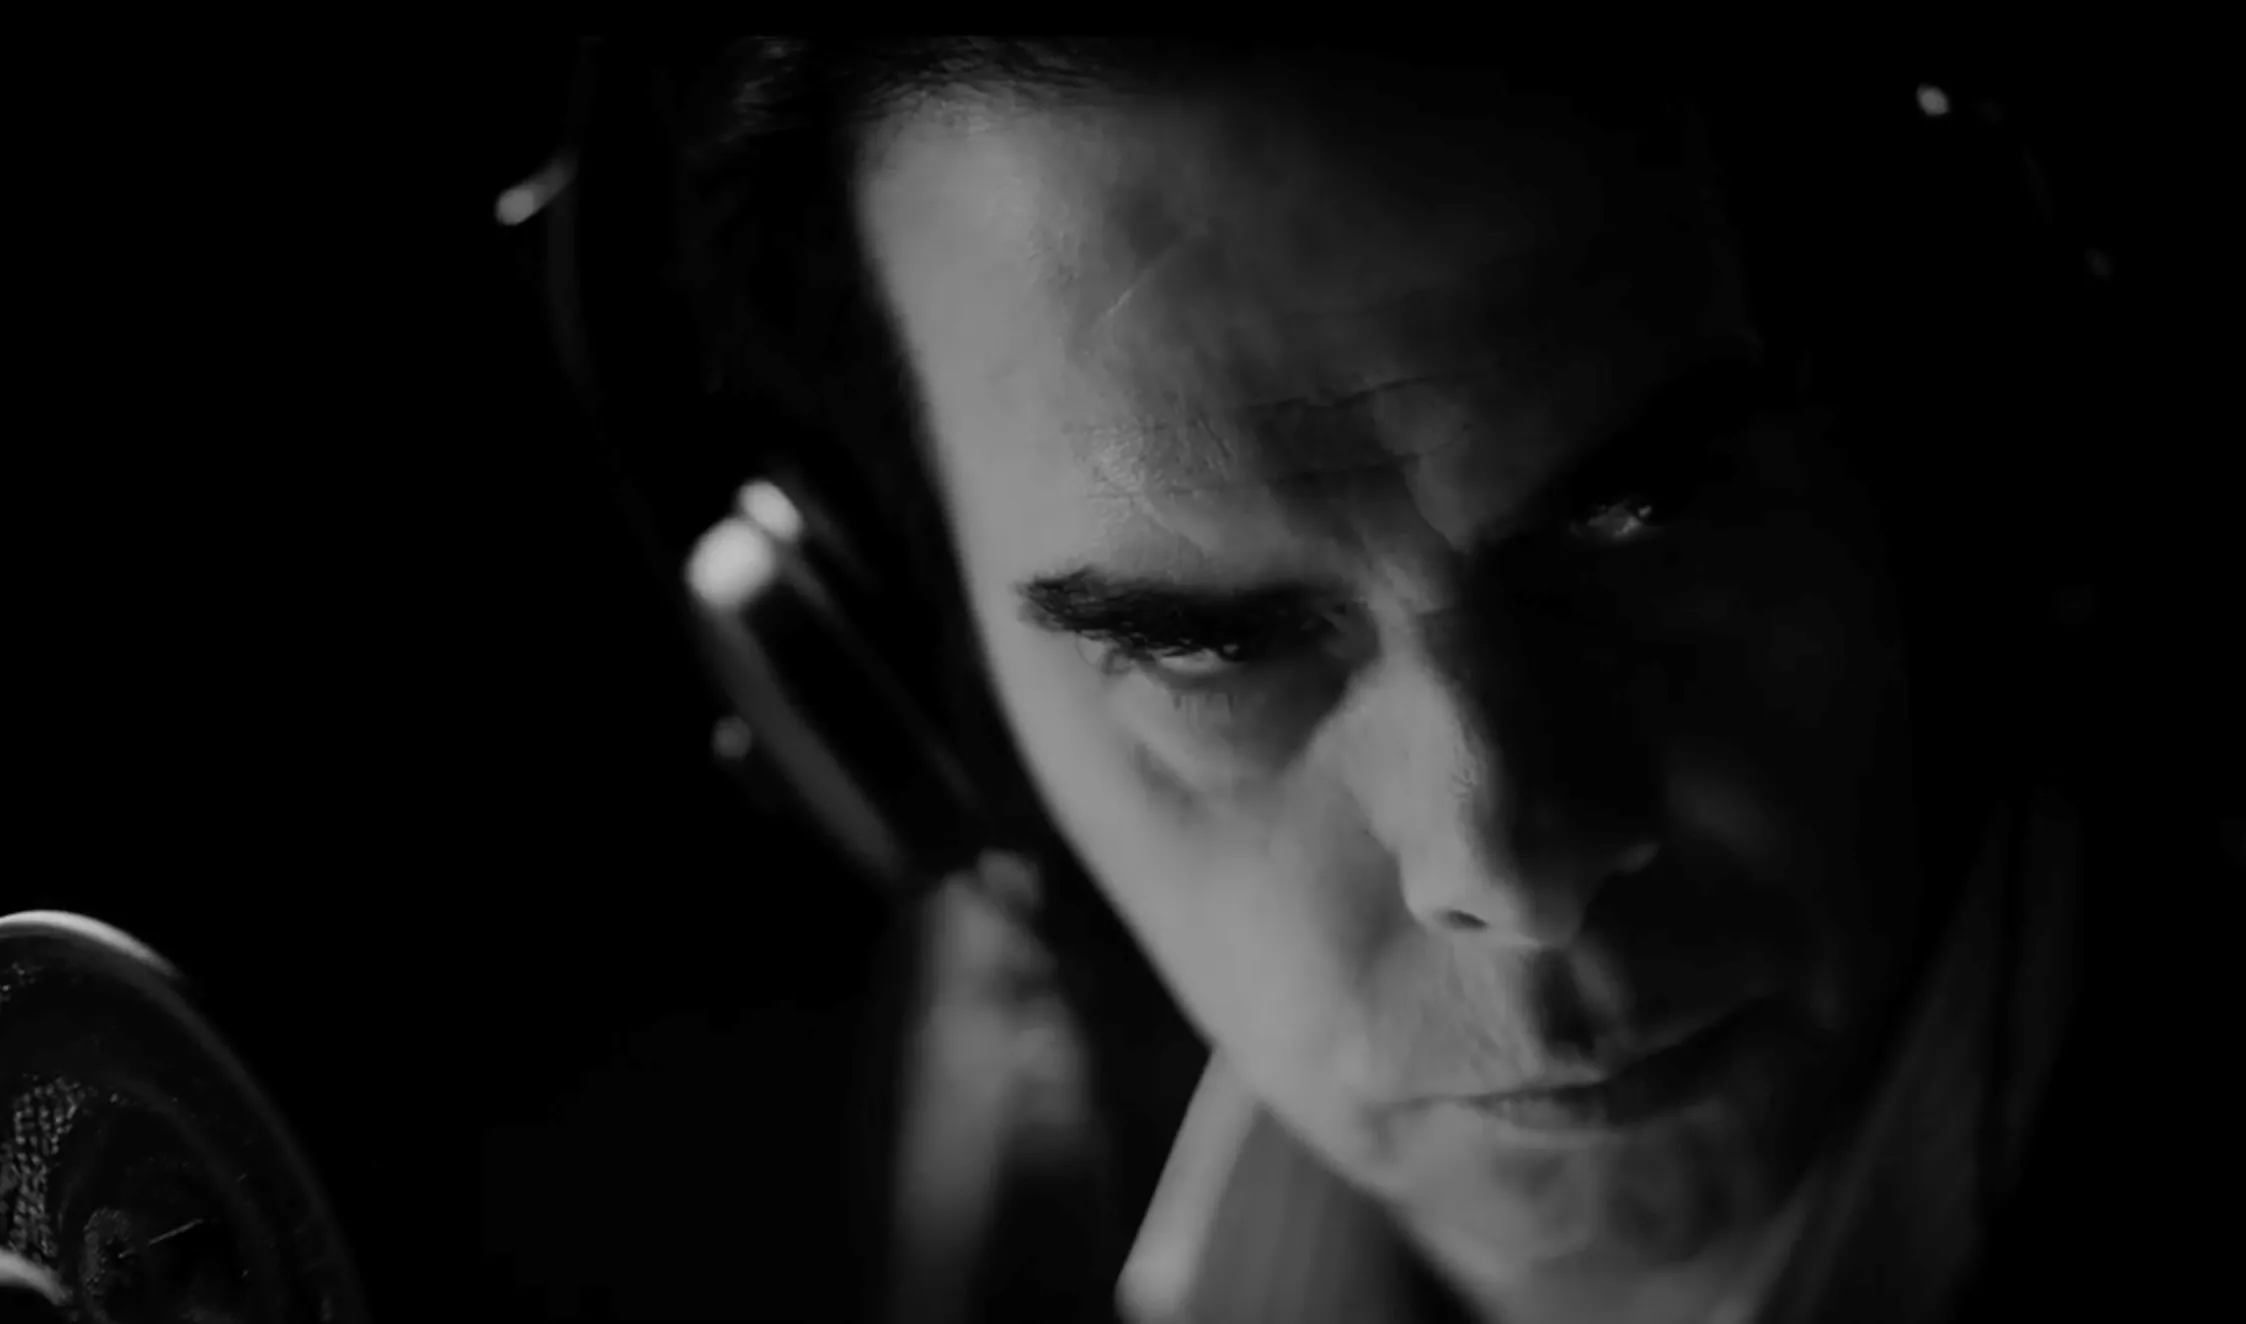 Se dyster trailer til nyt album og film med Nick Cave & The Bad Seeds